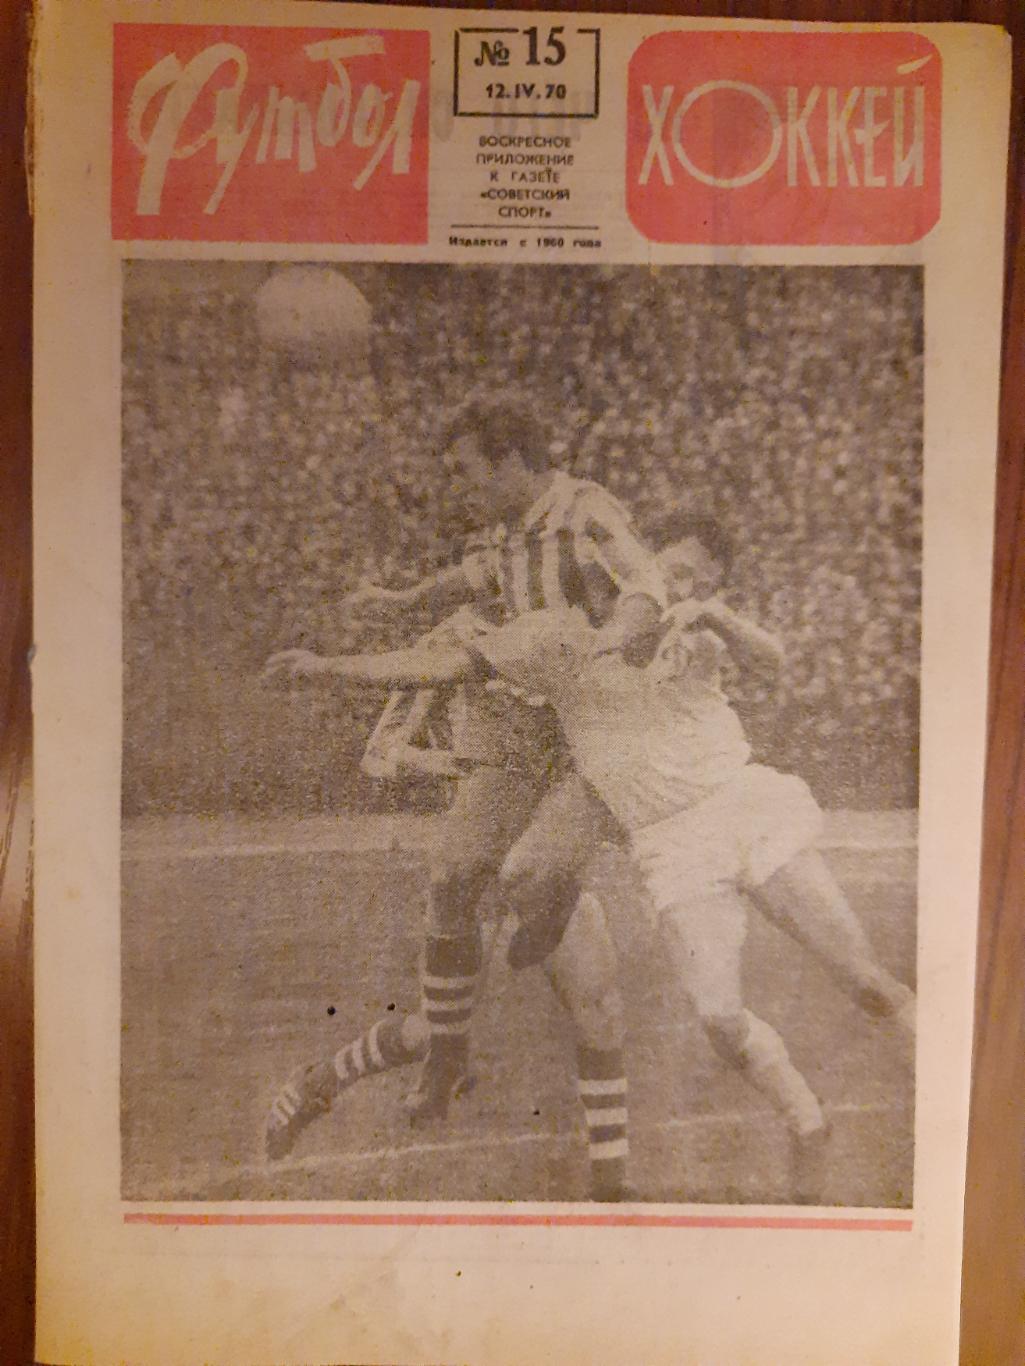 еженедельник футбол-хоккей #15,1970